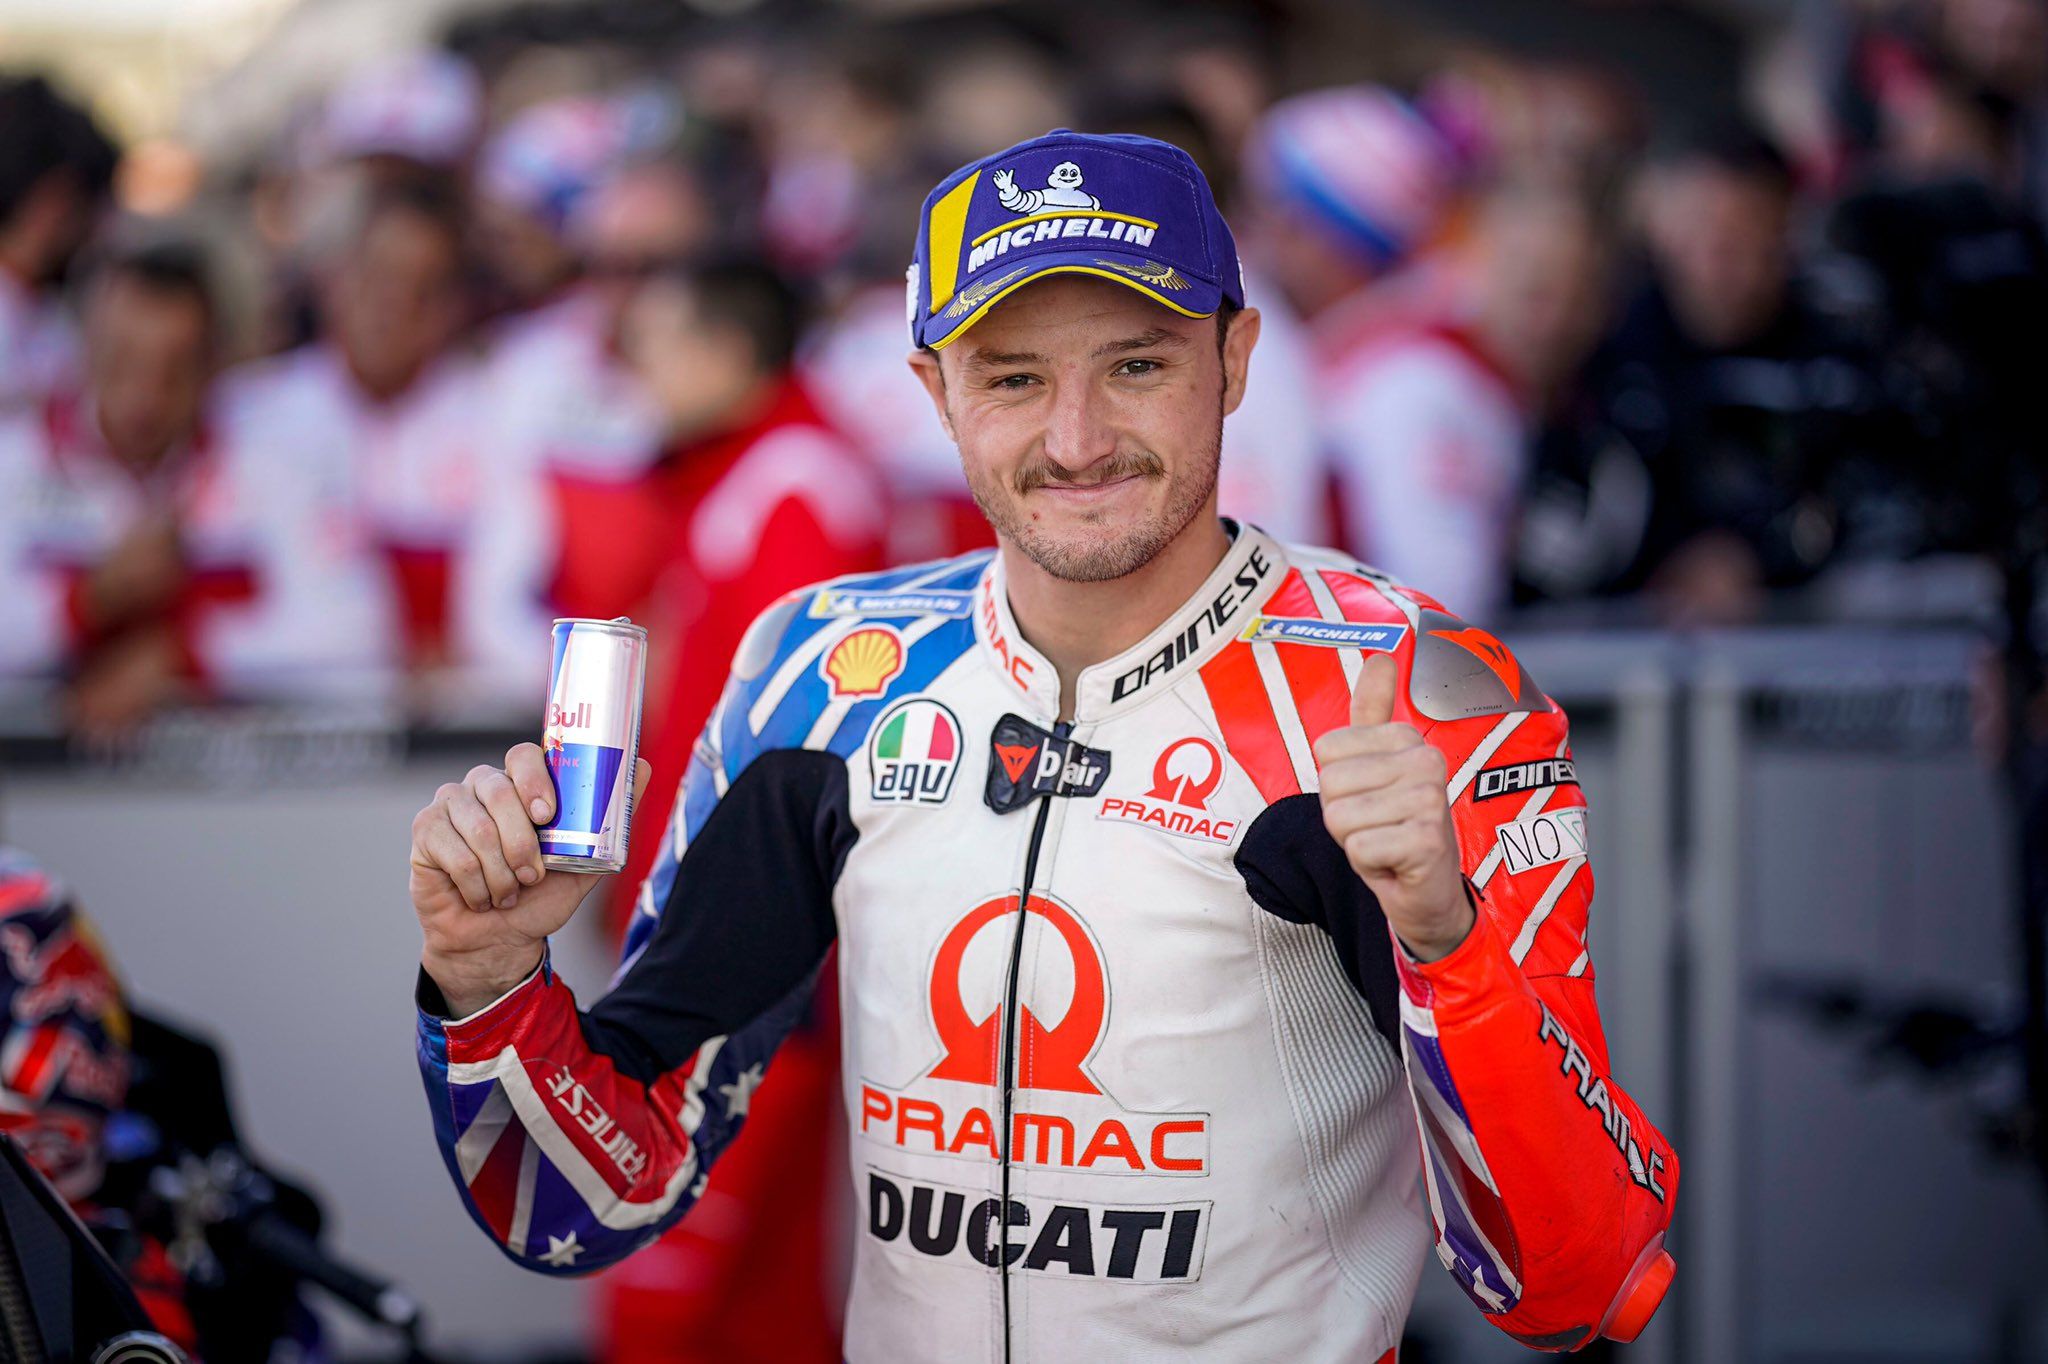 Pembalap Pramac Ducati Jack Miller optimistis mampu bersaing menjadi juara dunia MotoGP musim ini setelah Marc Marquez dipastikan tidak meraih poin dalam dua race pertama. 